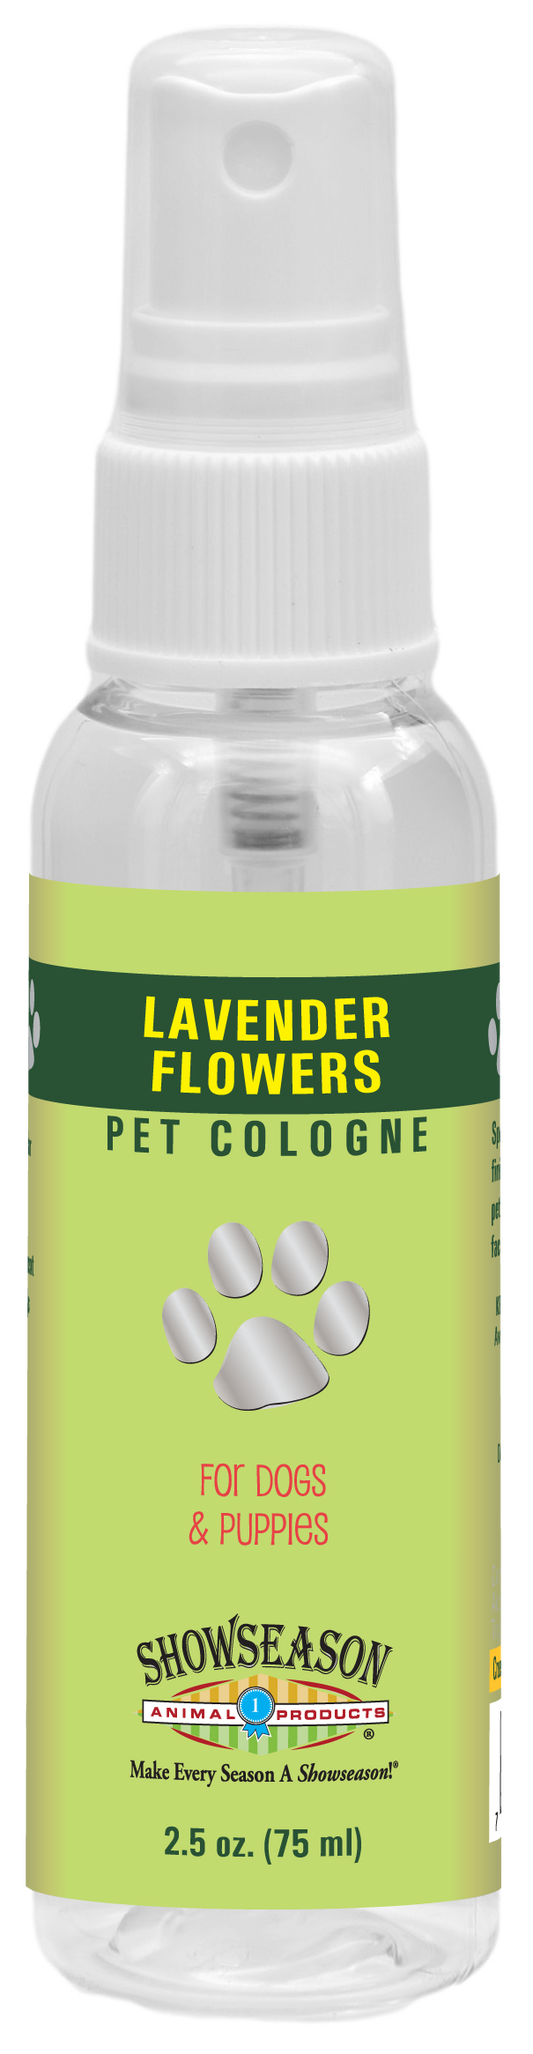 Lavender Flowers Pet Cologne | Showseason®